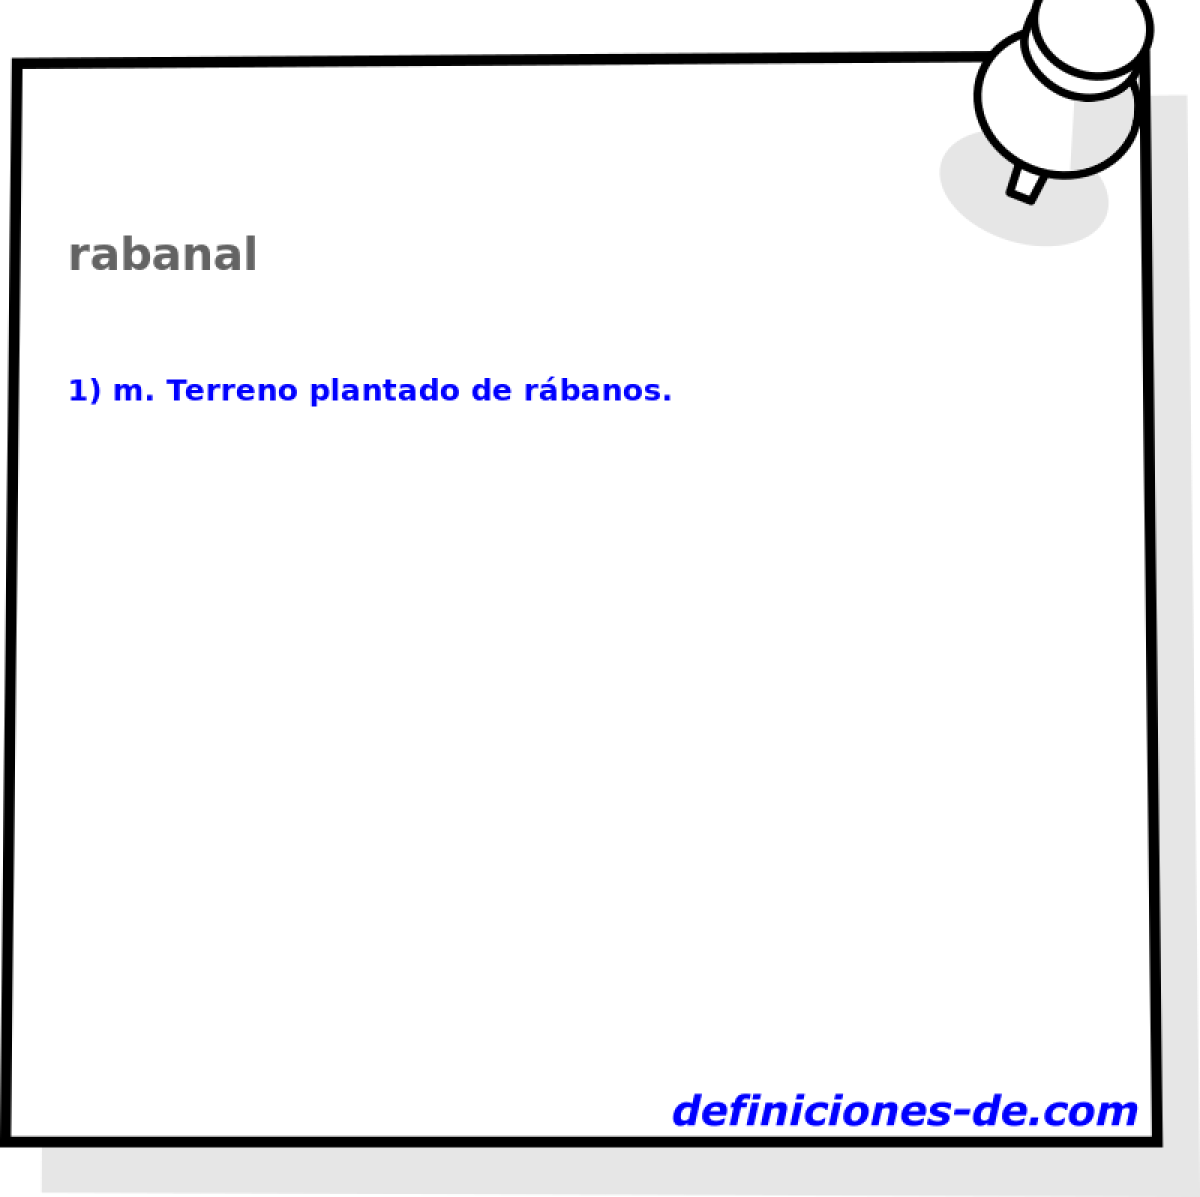 rabanal 